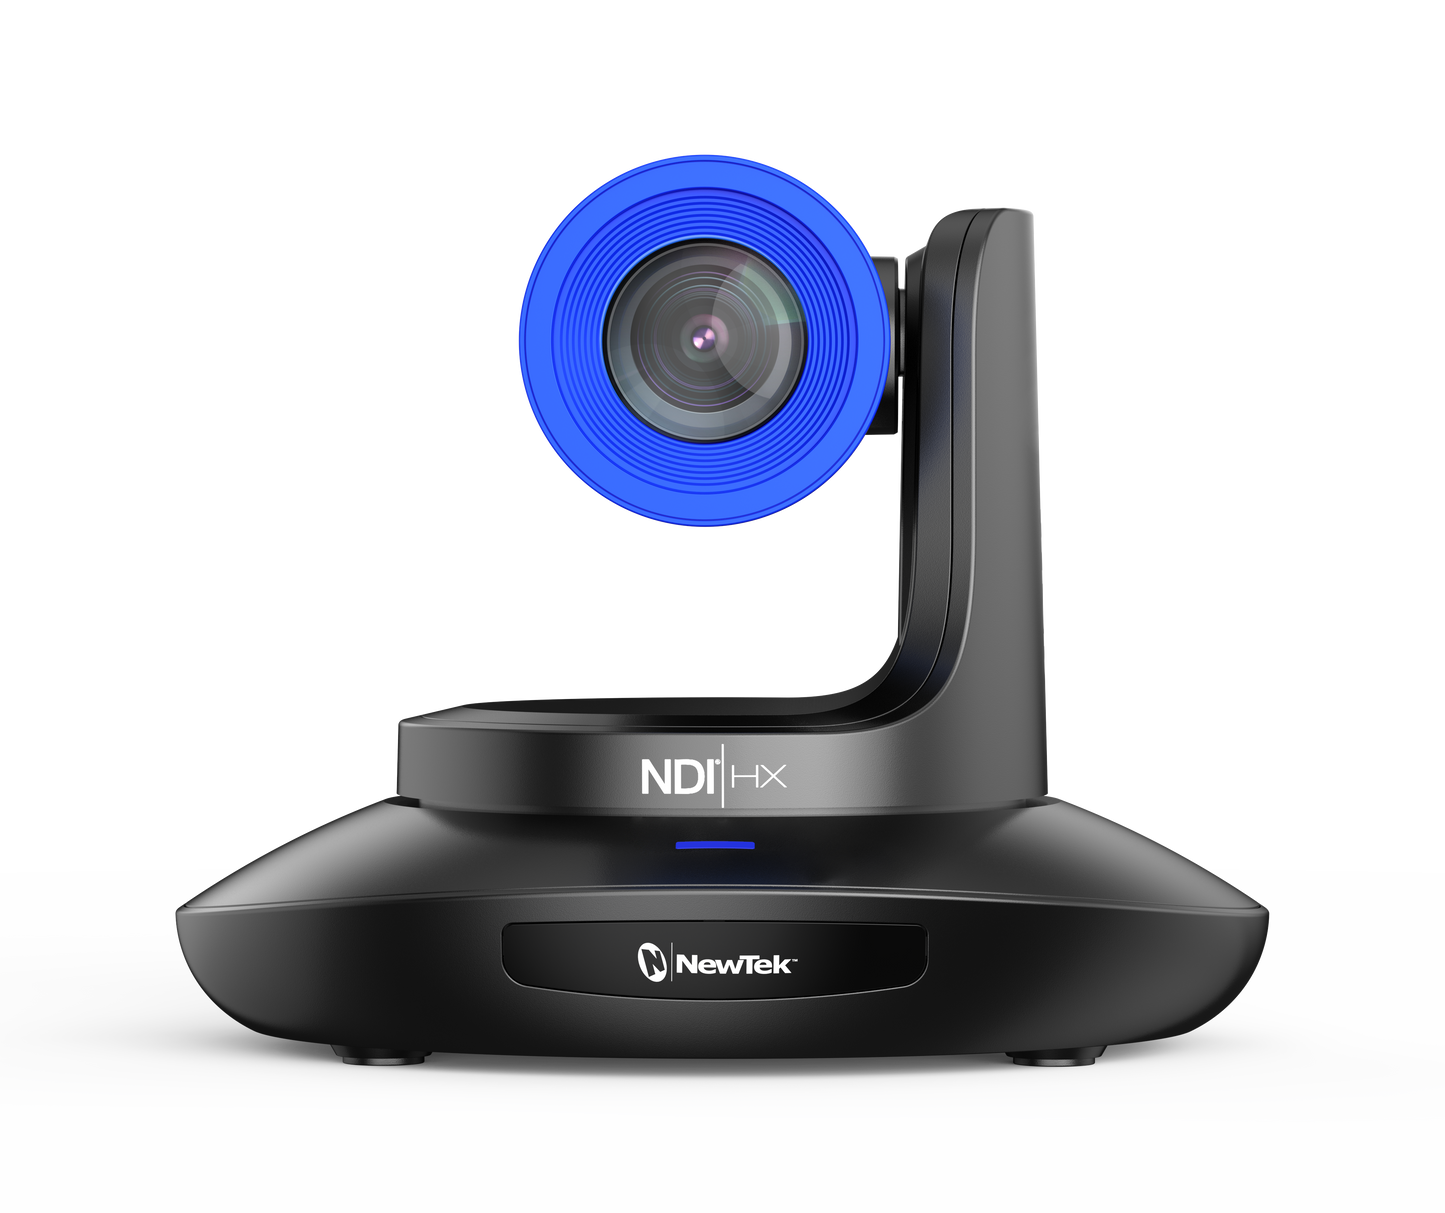 NewTek NDI|HX-PTZ3 Camera Black